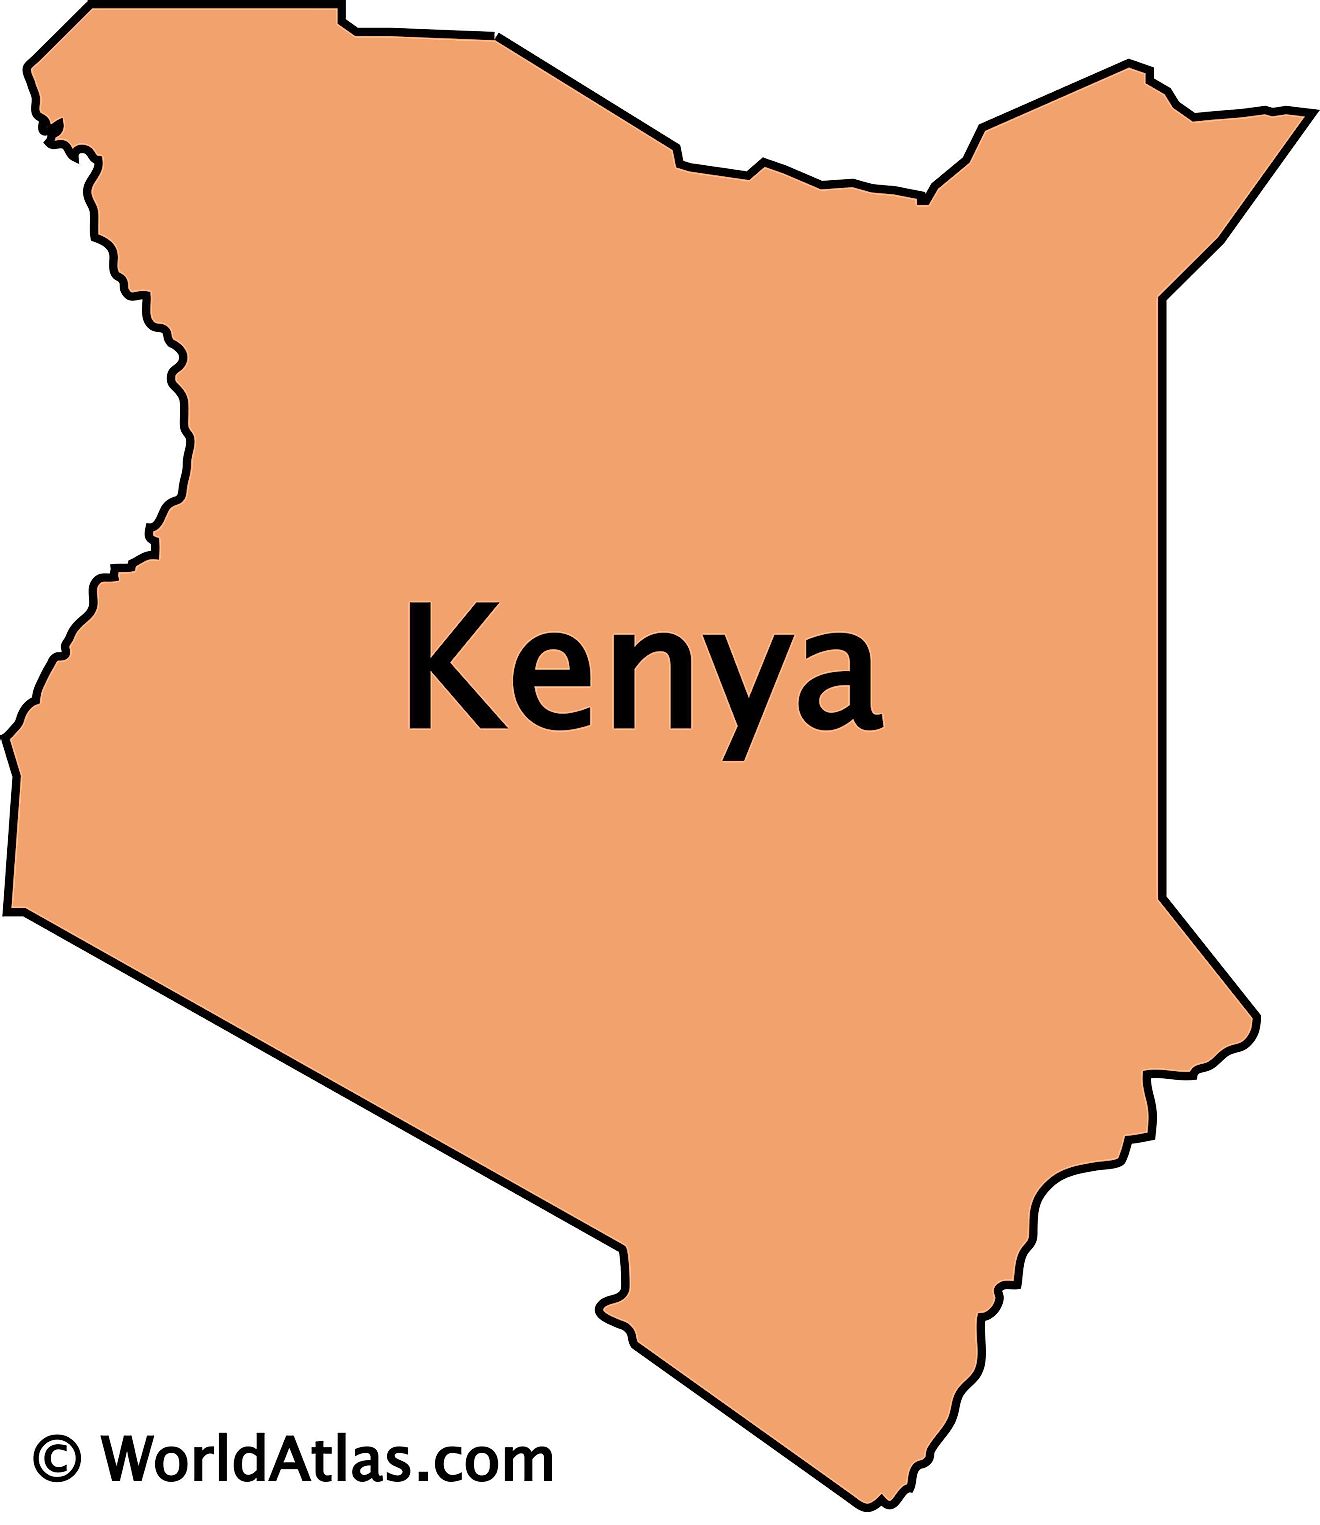 Outline Map of Kenya